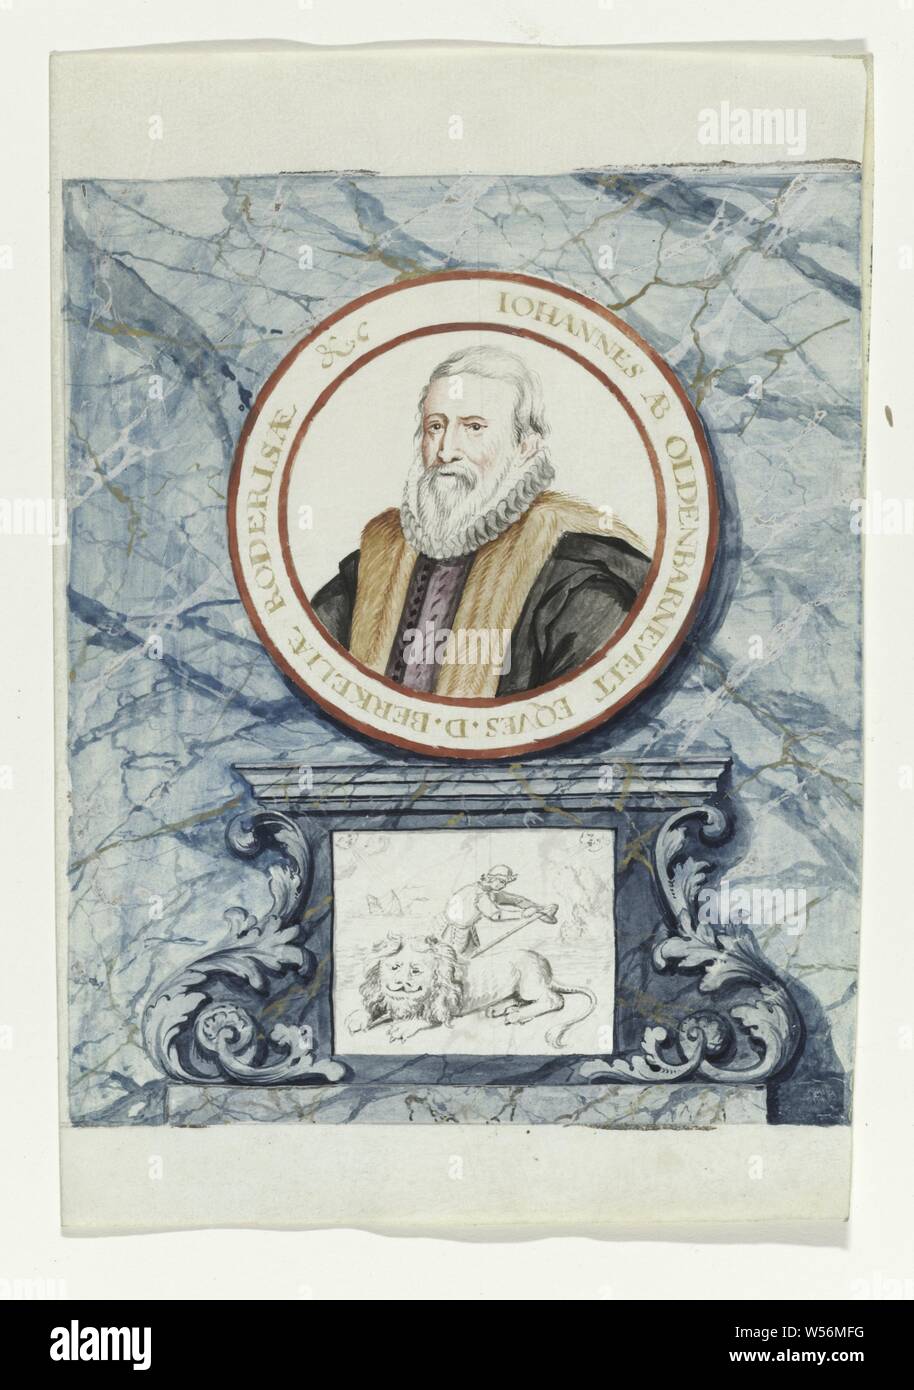 Ritratto di Van Oldenbarnevelt Regtspleging di Oldenbarnevelt (titolo serie), acquerello con il ritratto di Van Oldenbarnevelt entro la scritta 'IOHANNES AB OLDENBARNEVELT EQVES.D.BERKELIAE RODERISAE & c '. Posto su un altare in marmo, compresa una stampa di un uomo che batte un Lion. Associato con la serie di acquerelli in libro., anonimo, Olanda, 1708 - 1795, pergamena (materiale animale), acquerello (vernice), inchiostro e penna, h 23.5 cm × W 19 cm Foto Stock